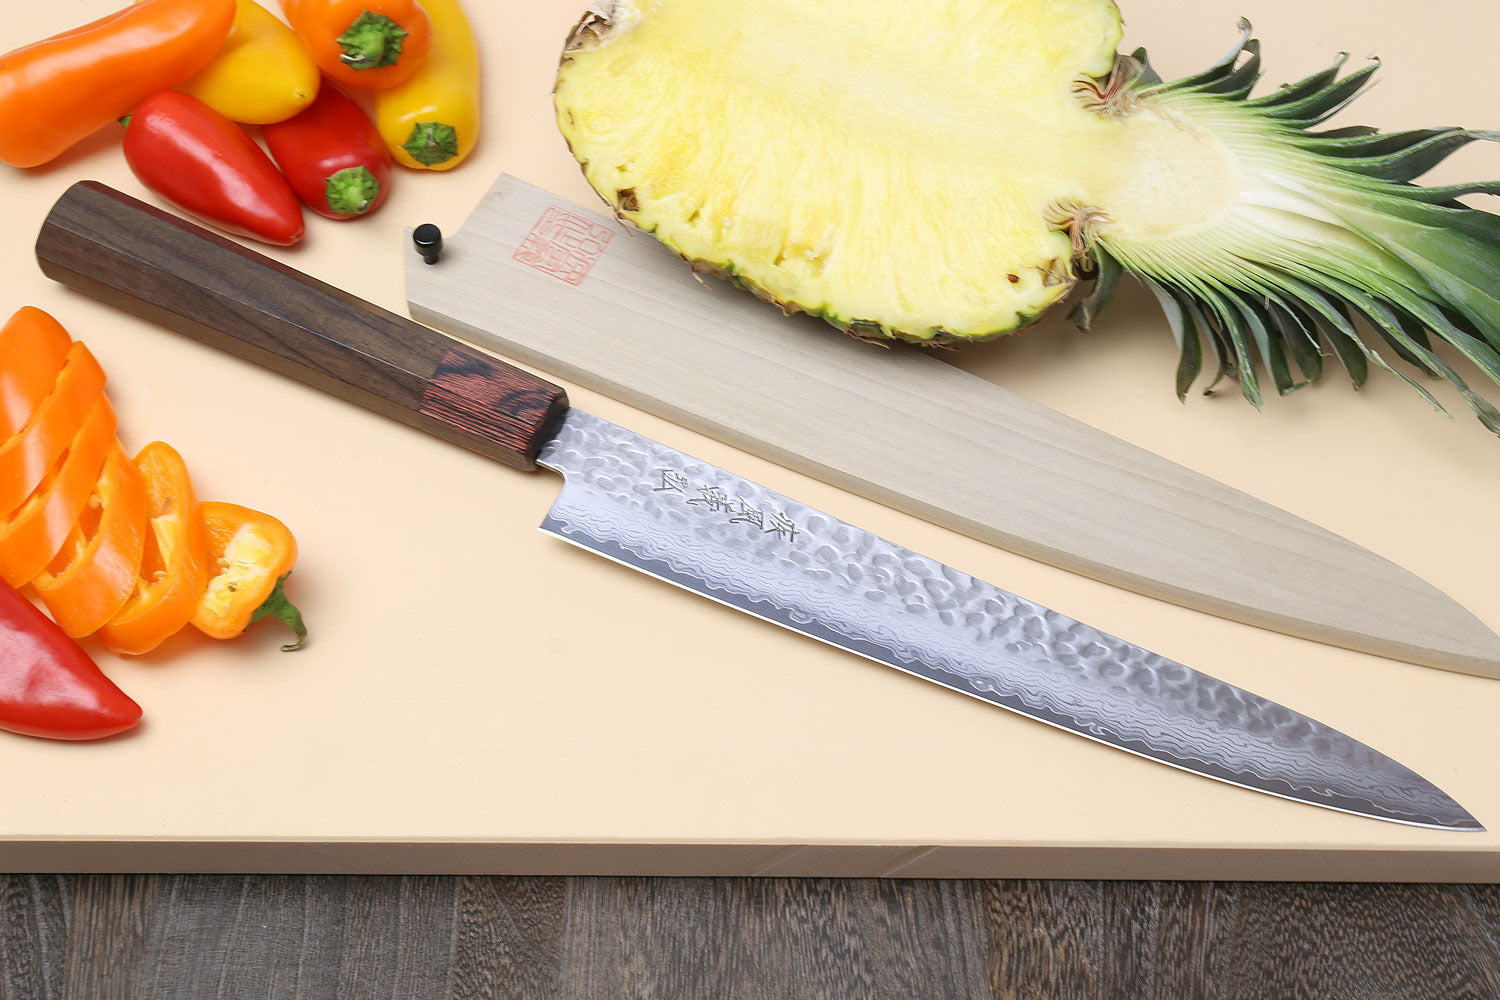 Damascus Ham knife Japan VG-10 Steel Brisket Slicing Knife Kitchen